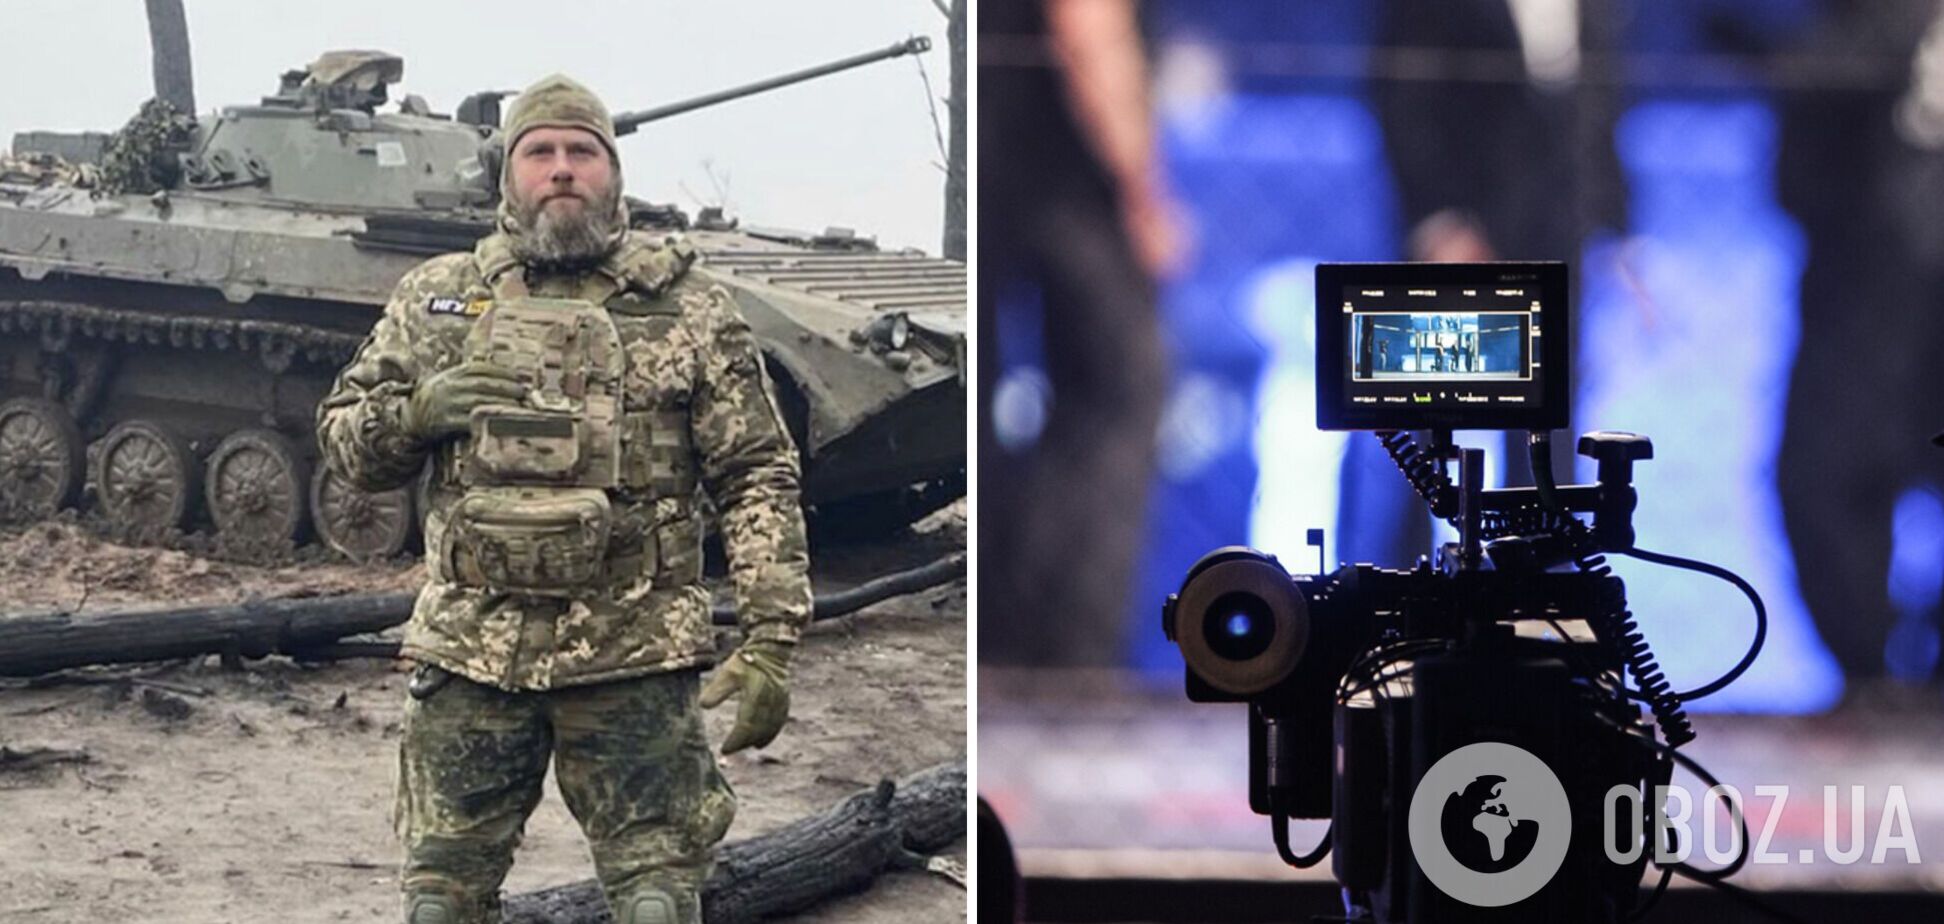 Известный украинский актер-воин рефлекторно выстрелил в коллегу в форме армии РФ на съемочной площадке